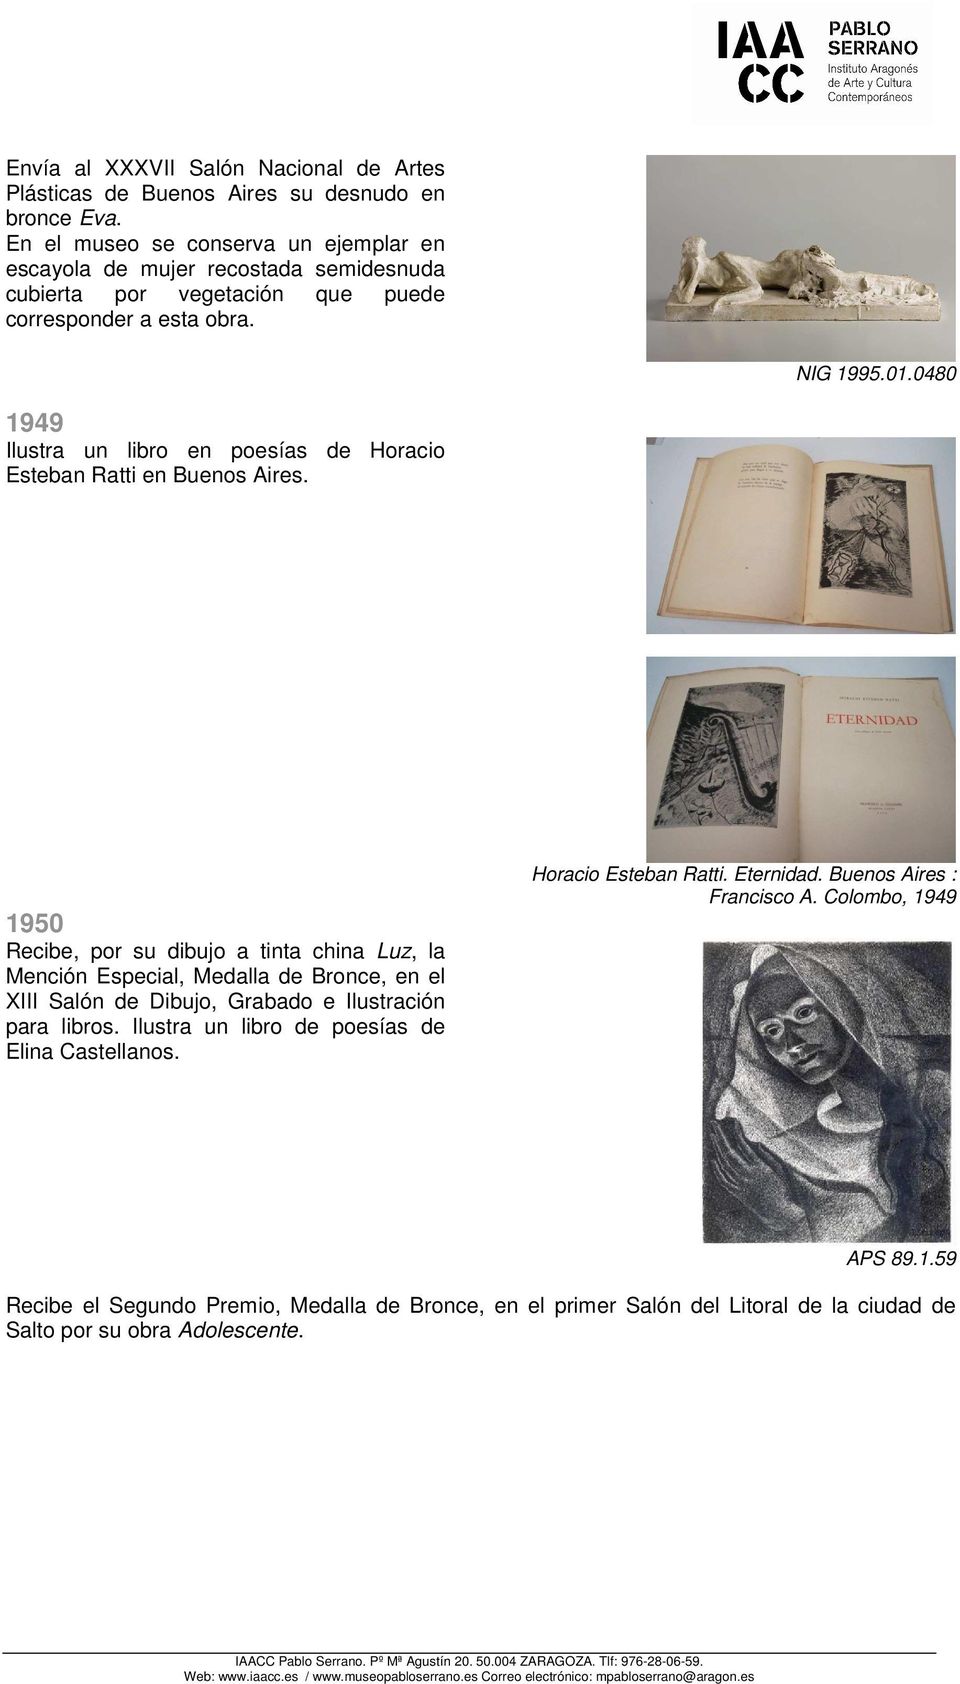 0480 1949 Ilustra un libro en poesías de Horacio Esteban Ratti en Buenos Aires.